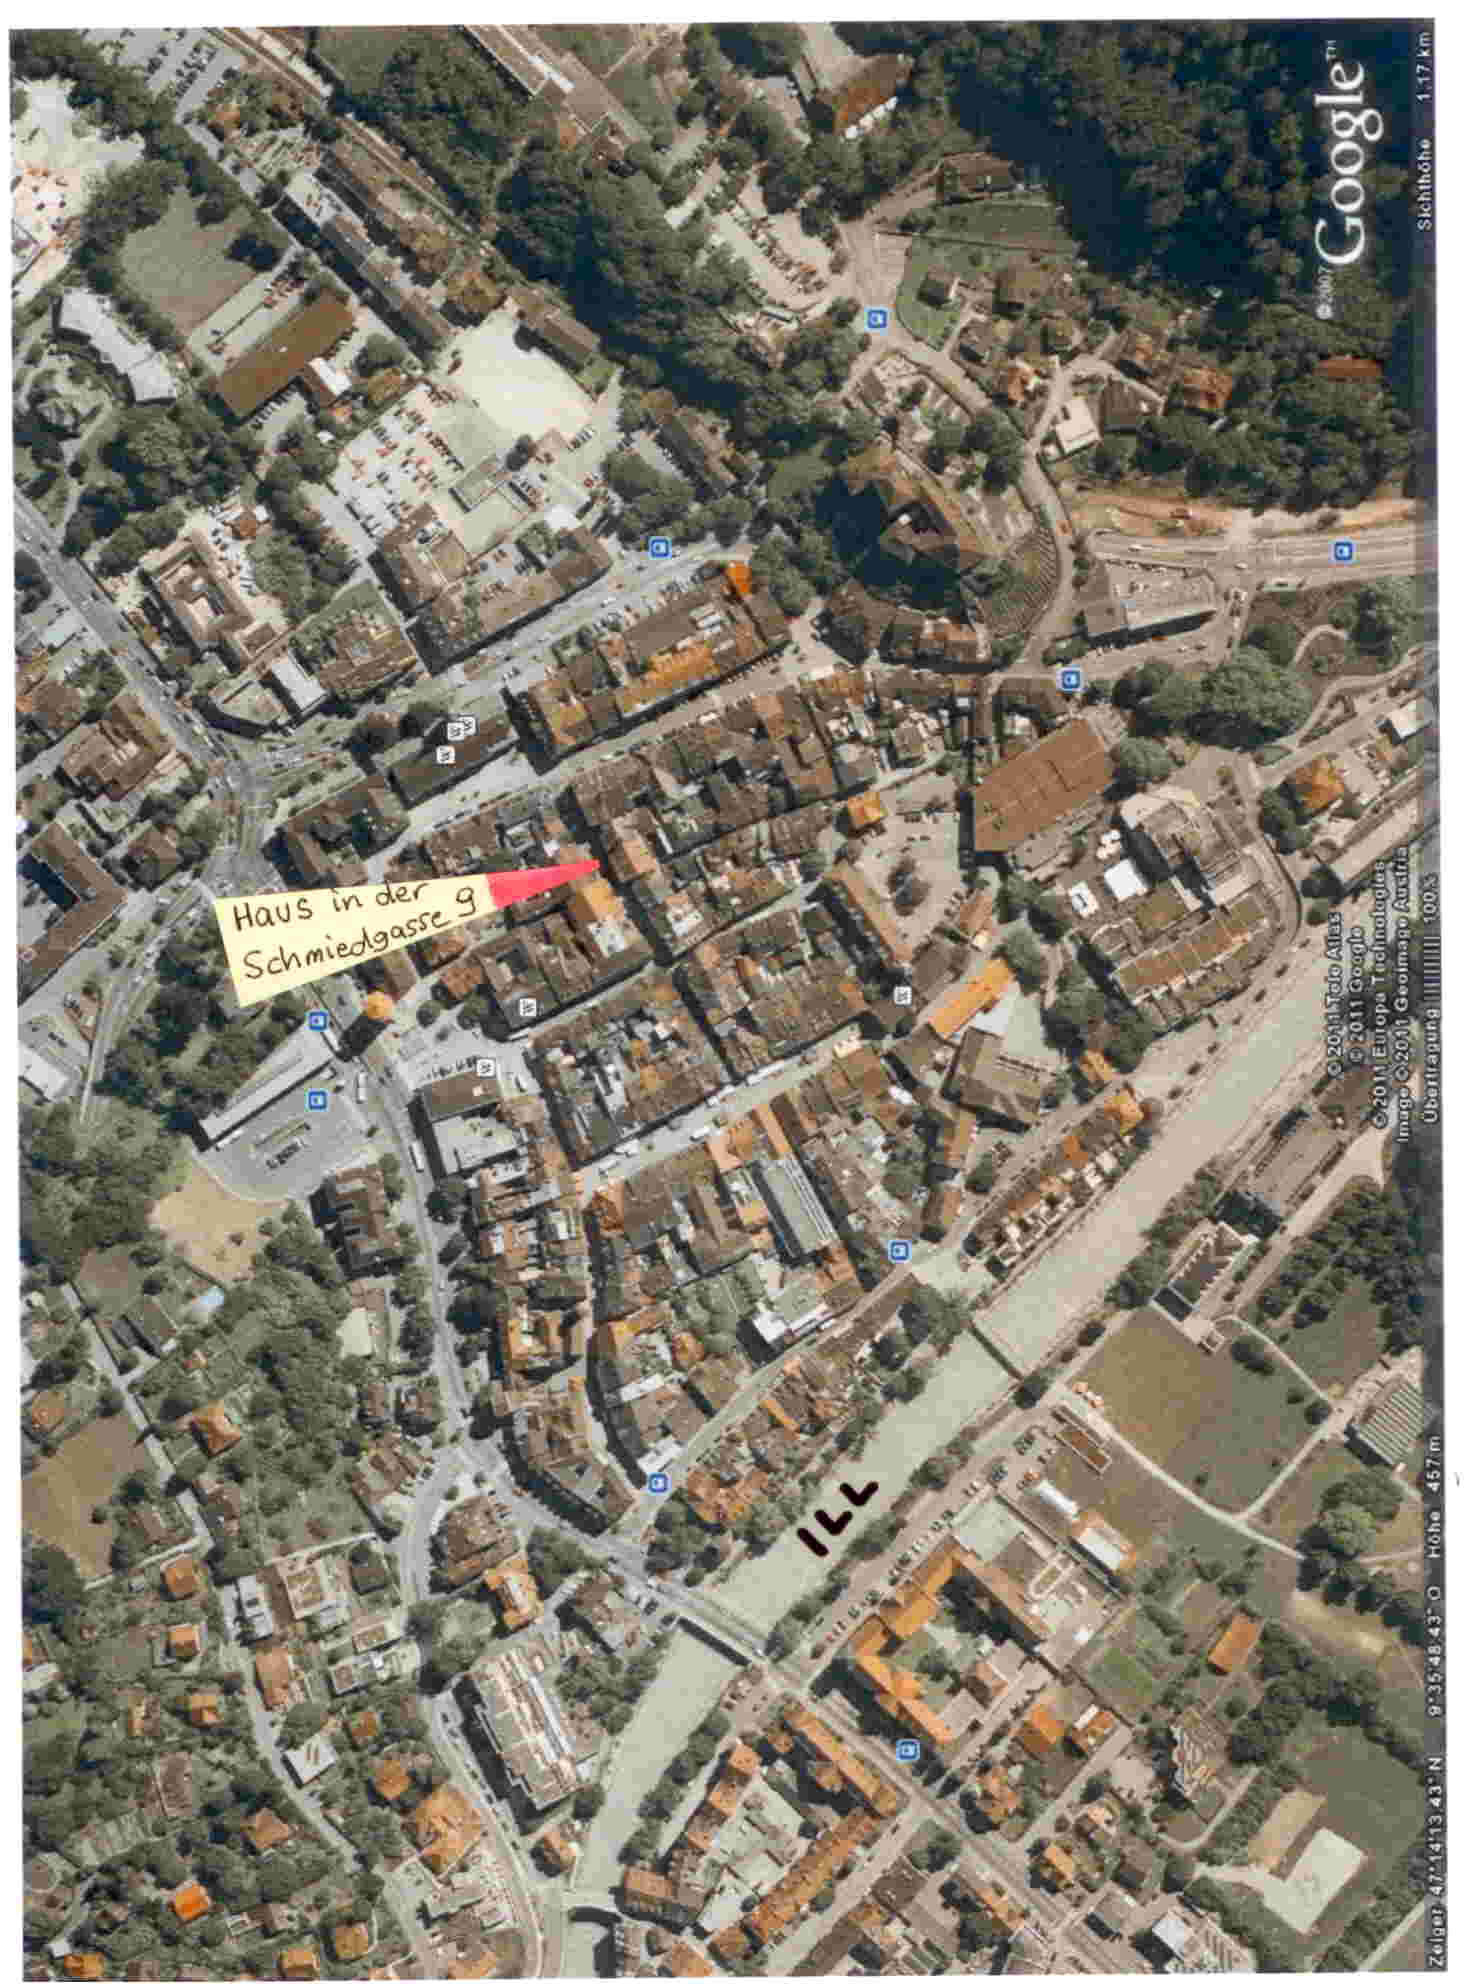 Lage der Wohnung Schmiedgasse 9 Mitten im Herzen der Altstadt location of the apartment in the heart of Feldkirch s old town Weitere